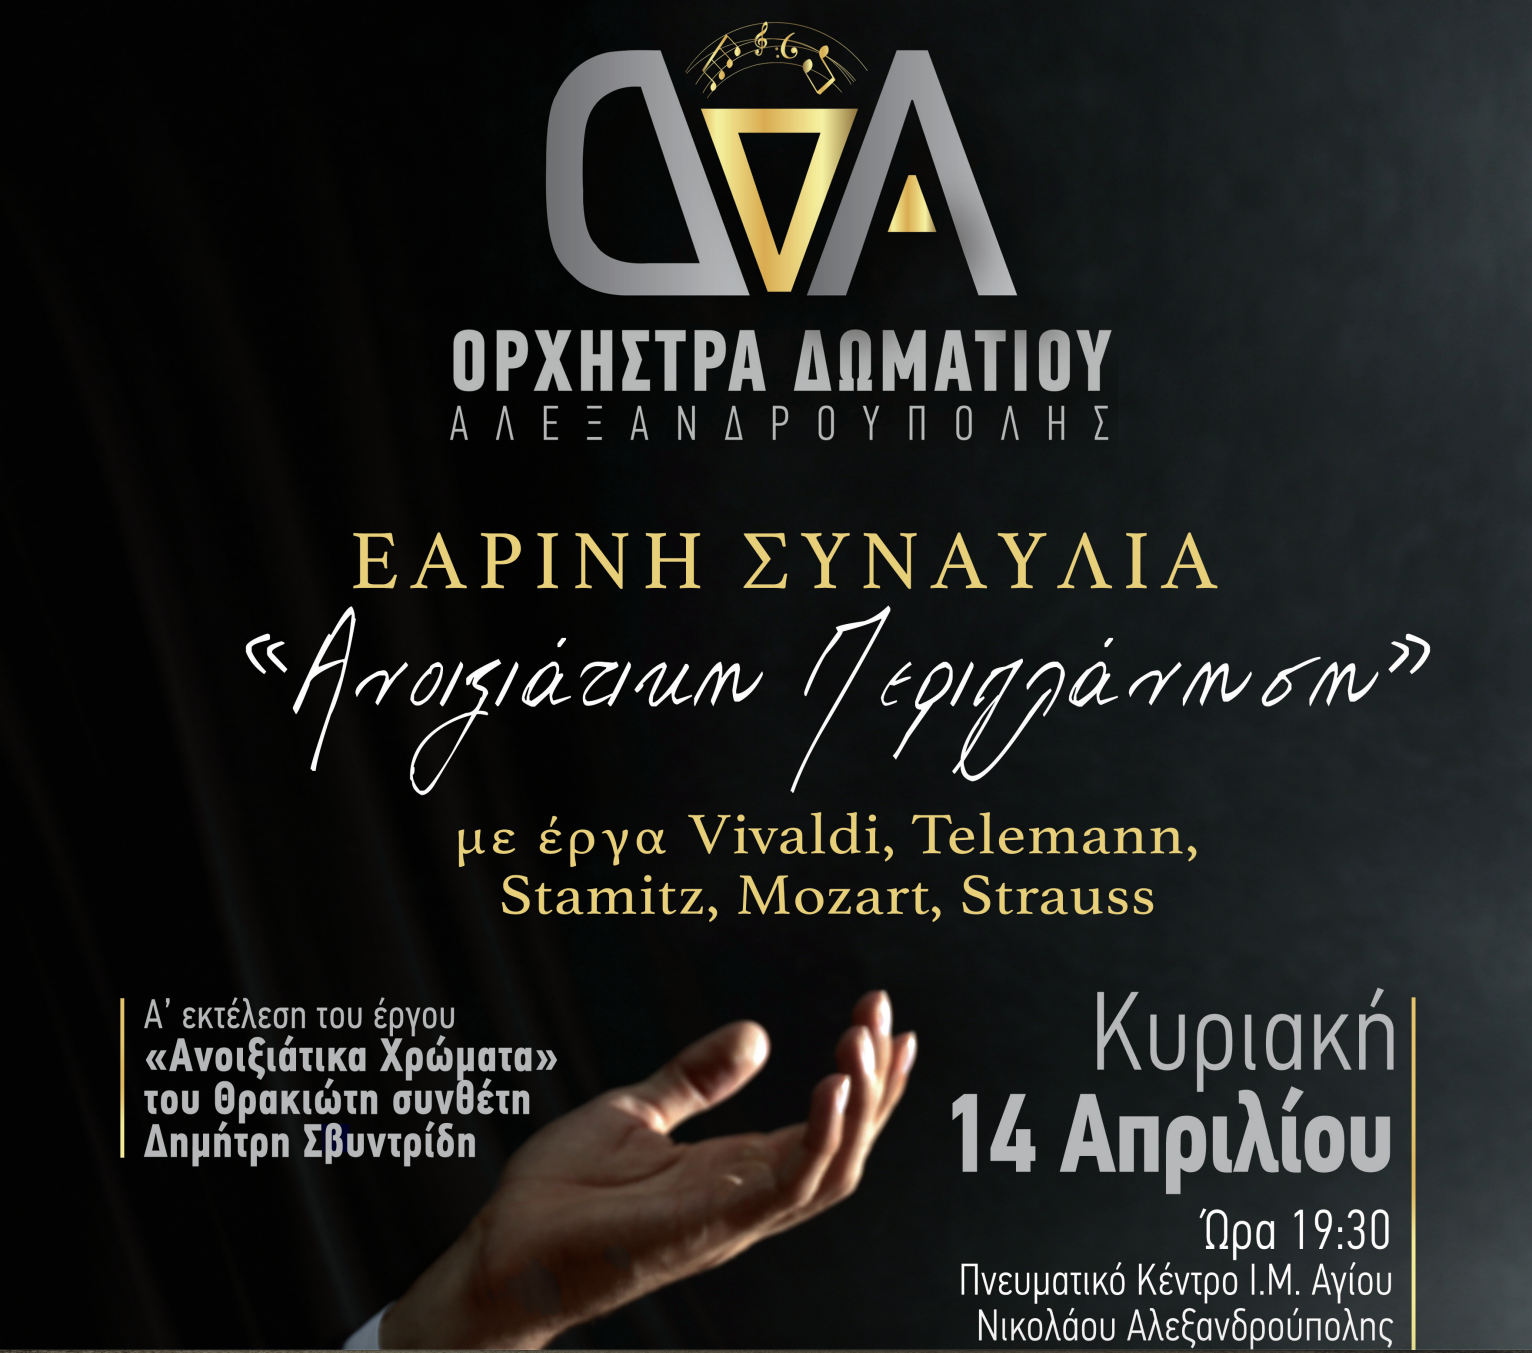 Αλεξανδρούπολη: Εαρινή Συναυλία από την Ο.Δ.Α. με τίτλο “Ανοιξιάτικη Περιπλάνηση”, στο Πνευματικό Κέντρο της Ιεράς Μητρόπολης